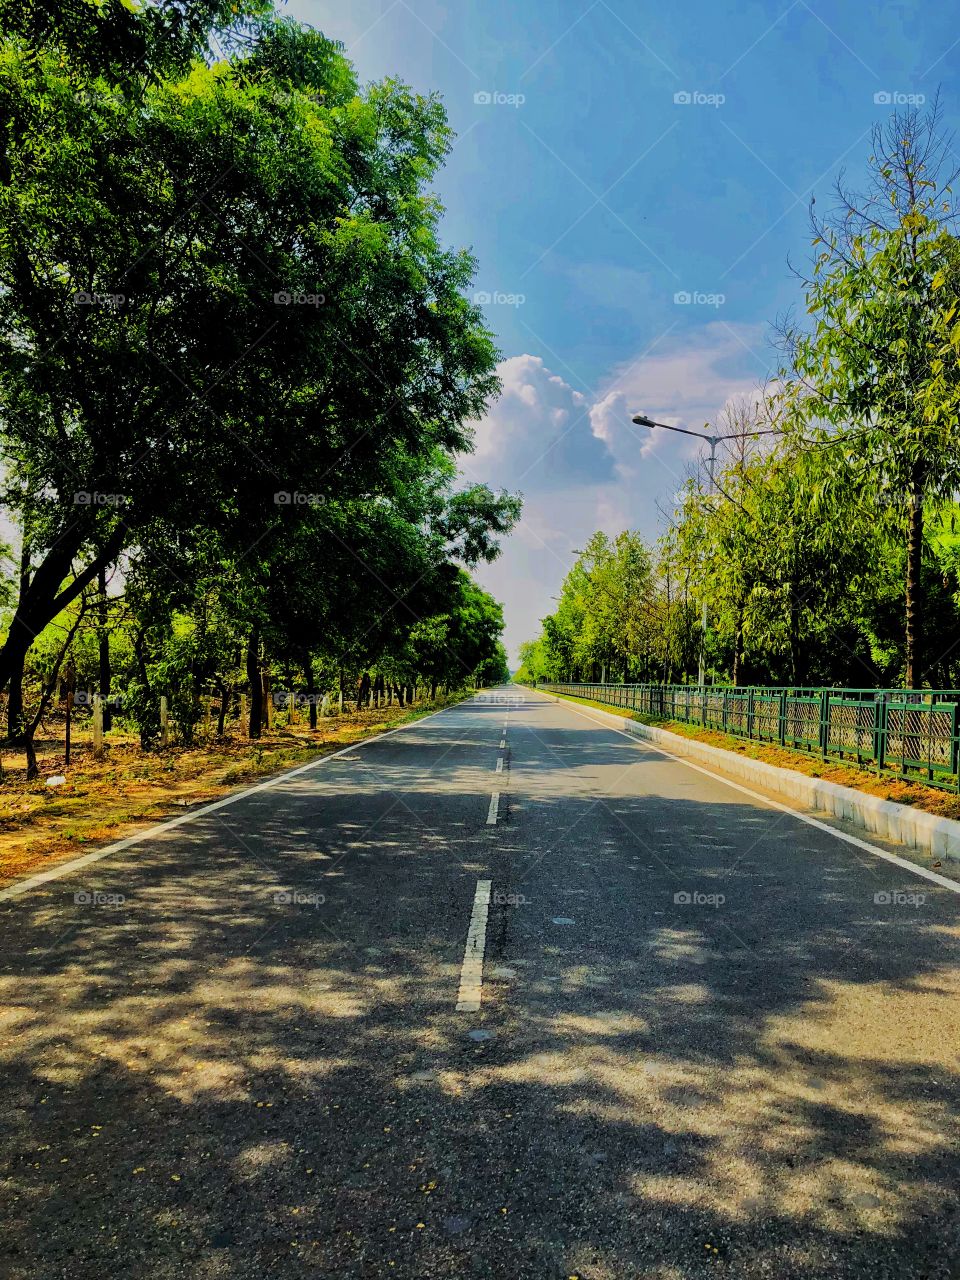 RoadTrip greater noida india